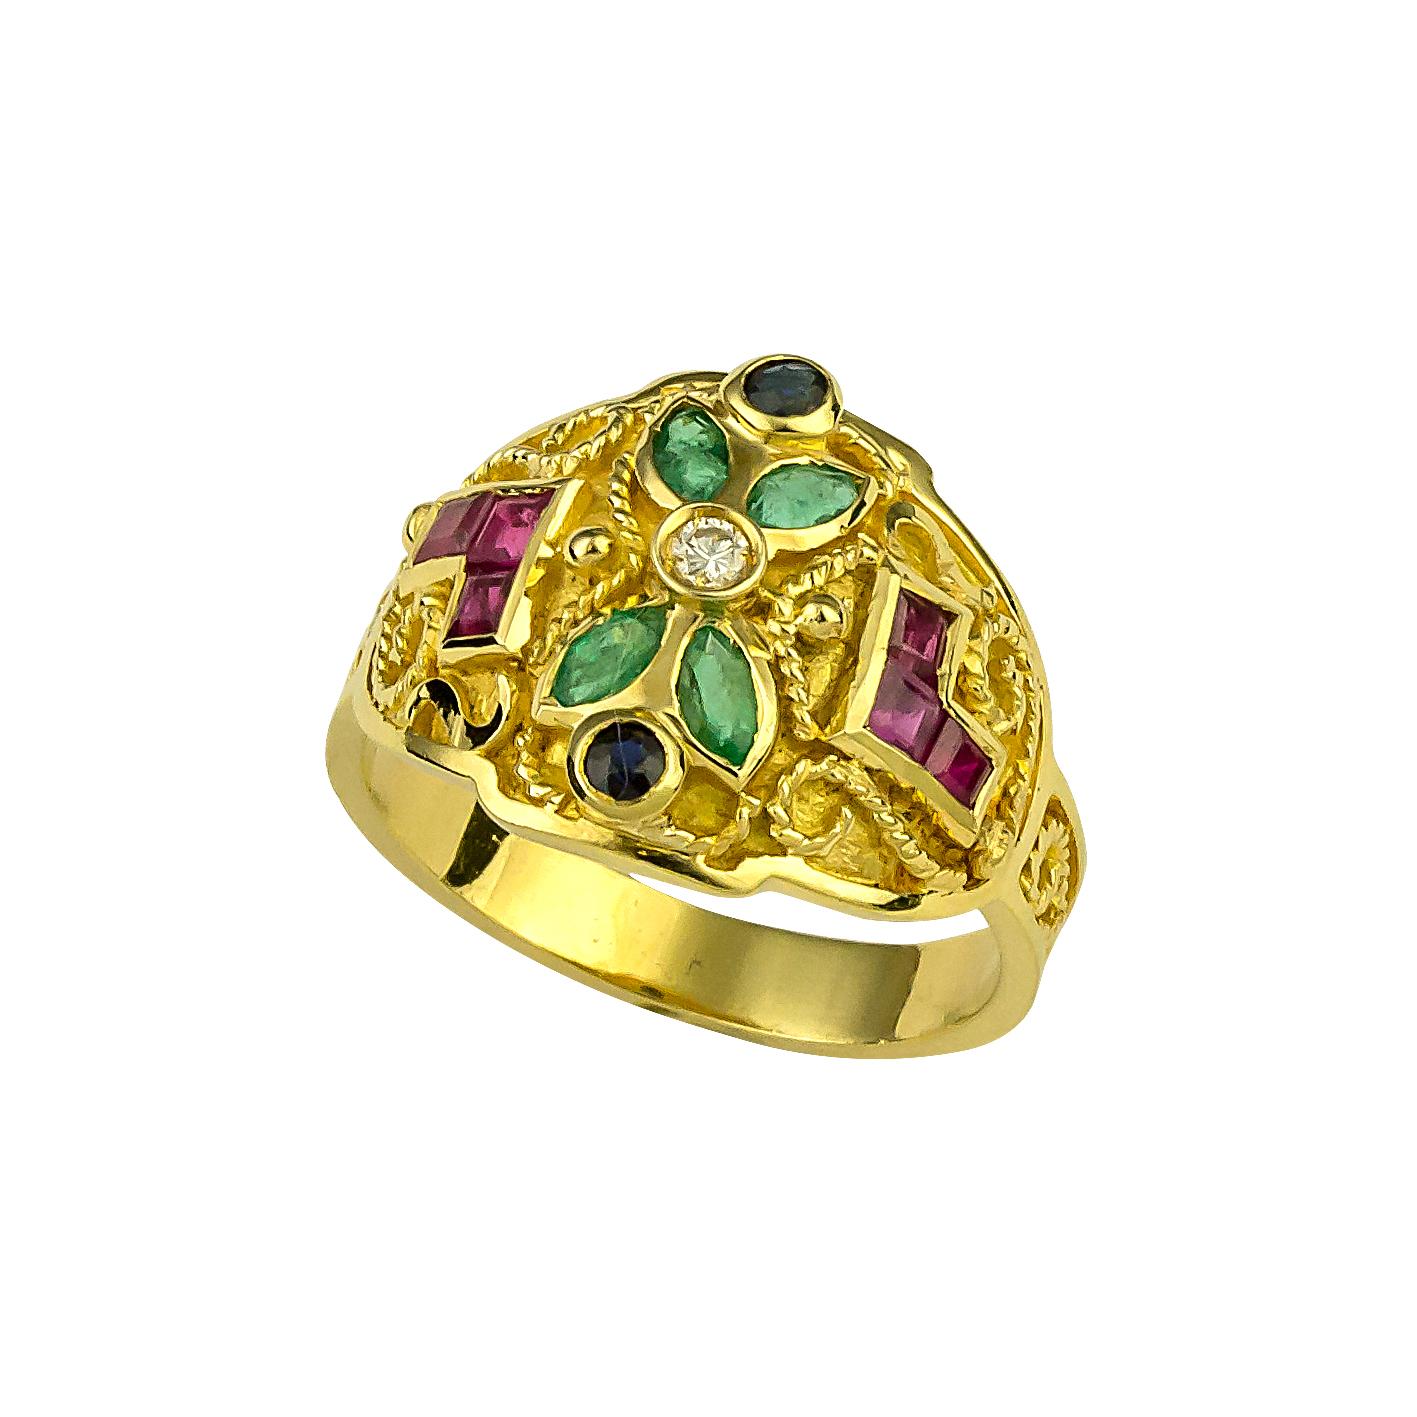 Diese S.Georgios Design multicolor Ring ist 18 Karat Gelbgold und ist alle handgefertigt mit byzantinischen Handwerk und hat Granulation Arbeit, die mikroskopisch gemacht wird. Es verfügt über Brillantschliff Diamanten in der Mitte Gesamtgewicht von